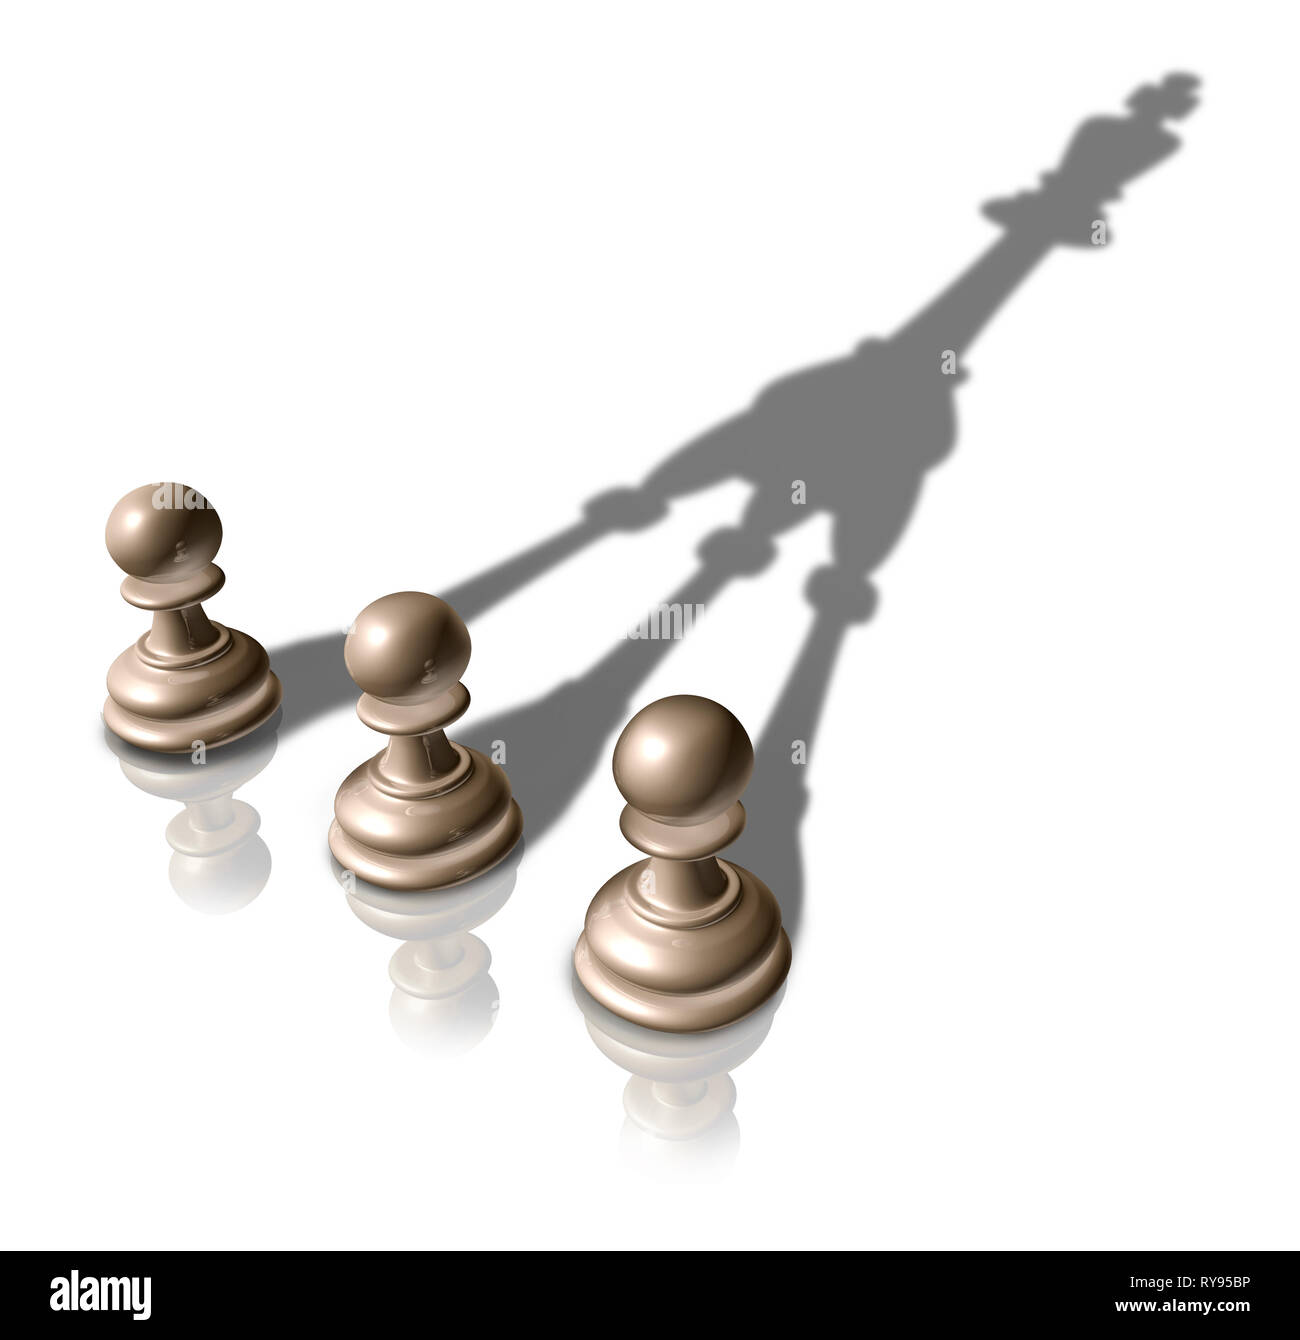 Estrategia de negocios exitosa y uniendo fuerzas juntos por concepto de éxito como un equipo de liderazgo idea como peón de ajedrez tres piezas de fundición de una fusión. Foto de stock